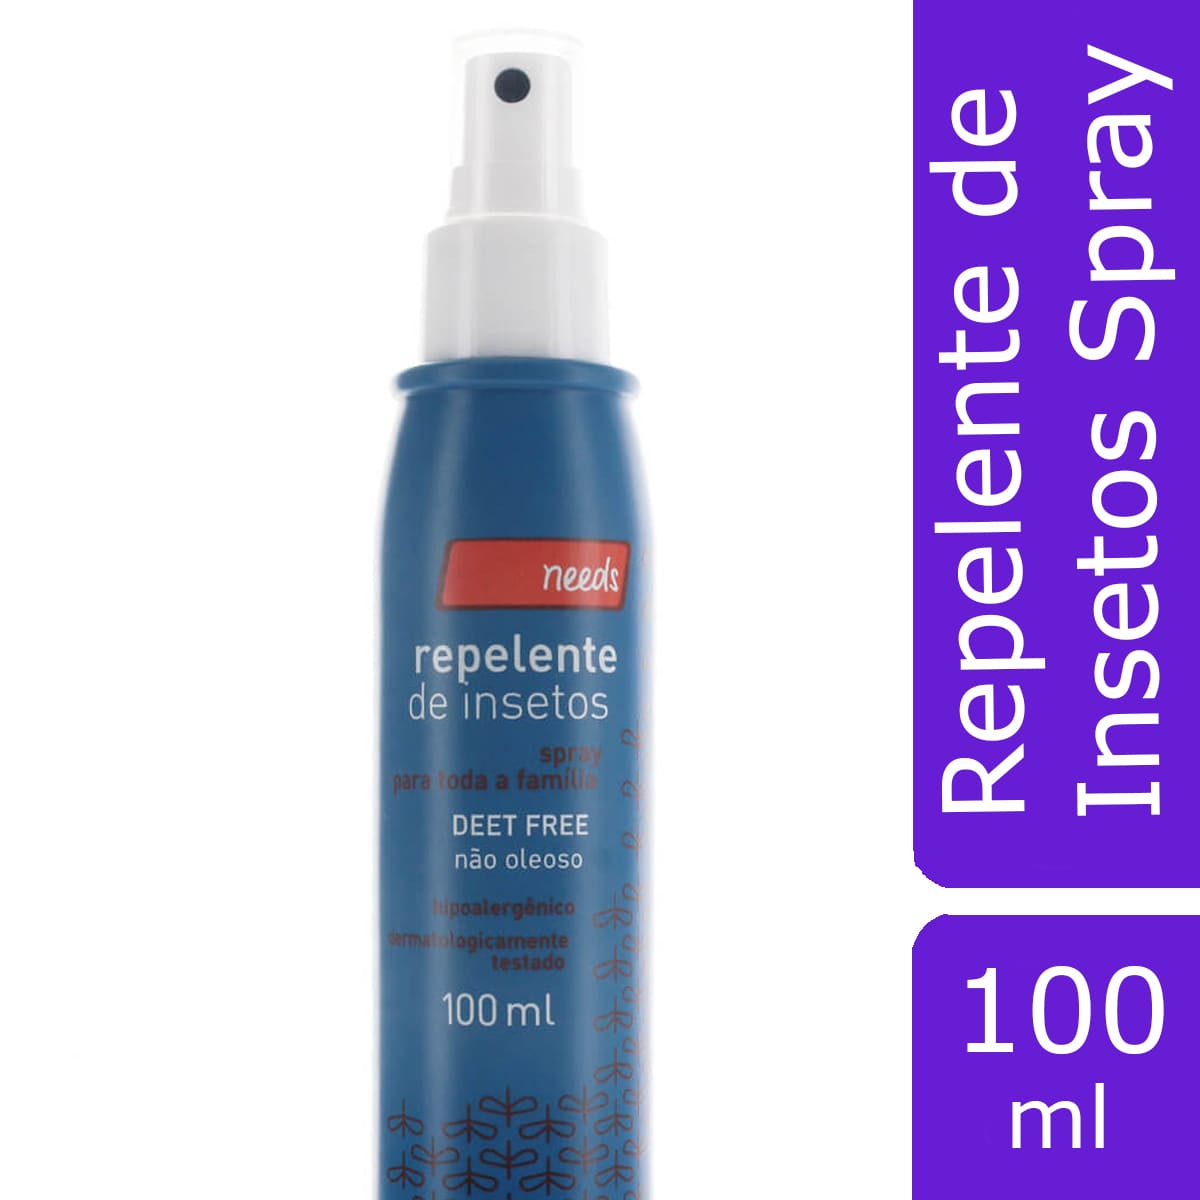 Repelente de Insetos Spray Needs 100ml